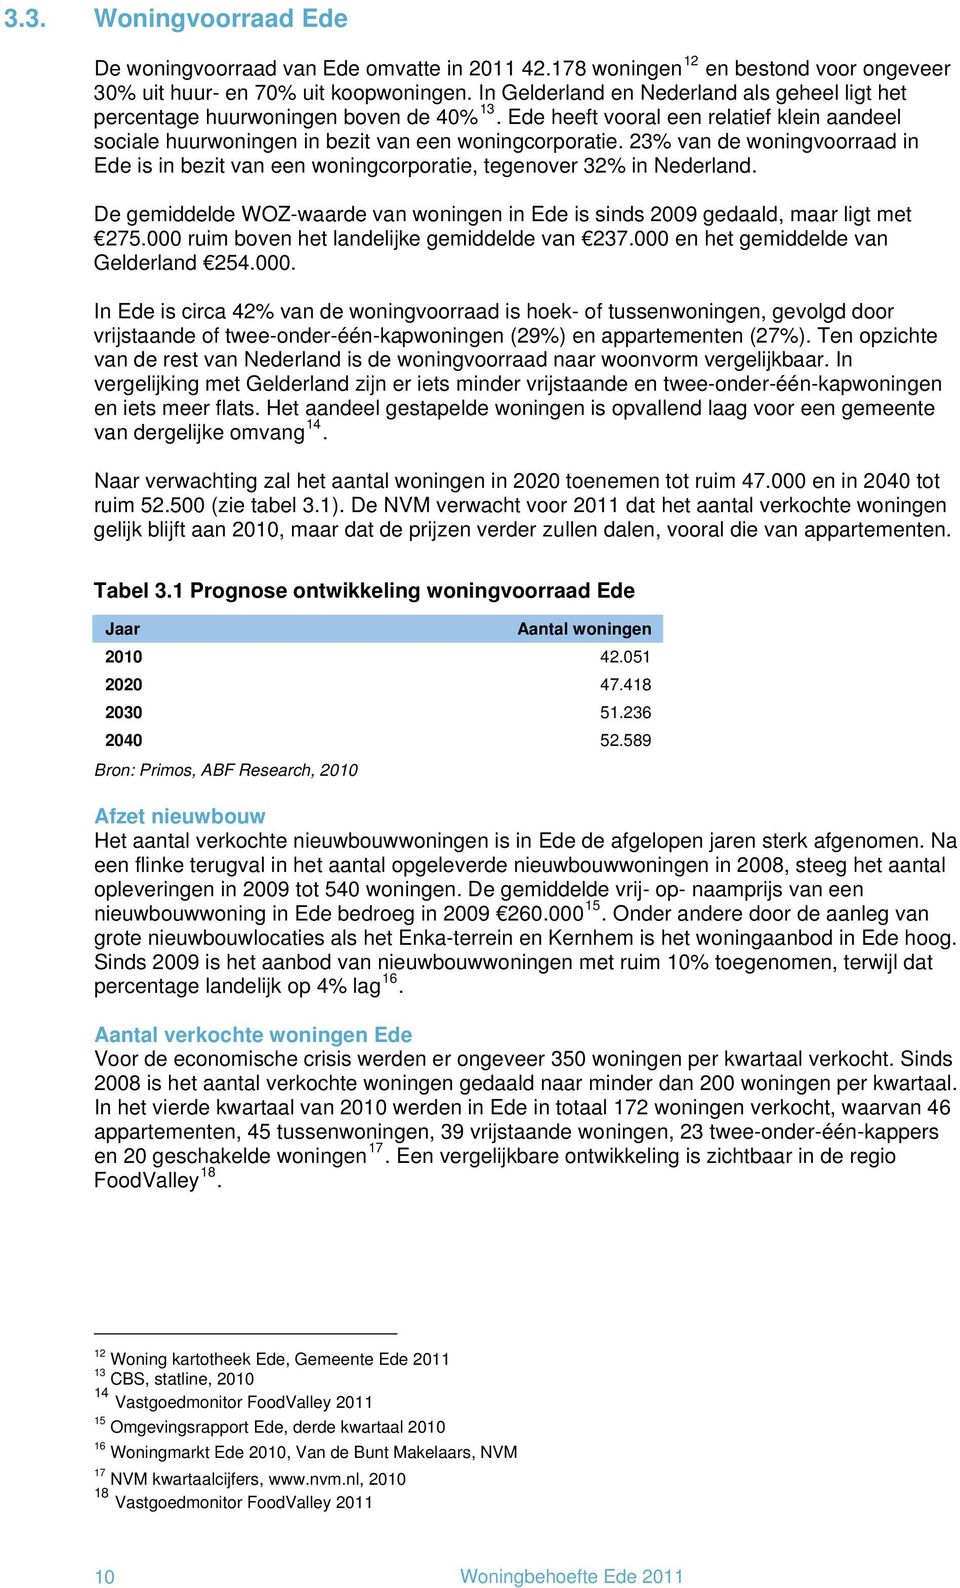 23% van de woningvoorraad in Ede is in bezit van een woningcorporatie, tegenover 32% in Nederland. De gemiddelde WOZ-waarde van woningen in Ede is sinds 2009 gedaald, maar ligt met 275.